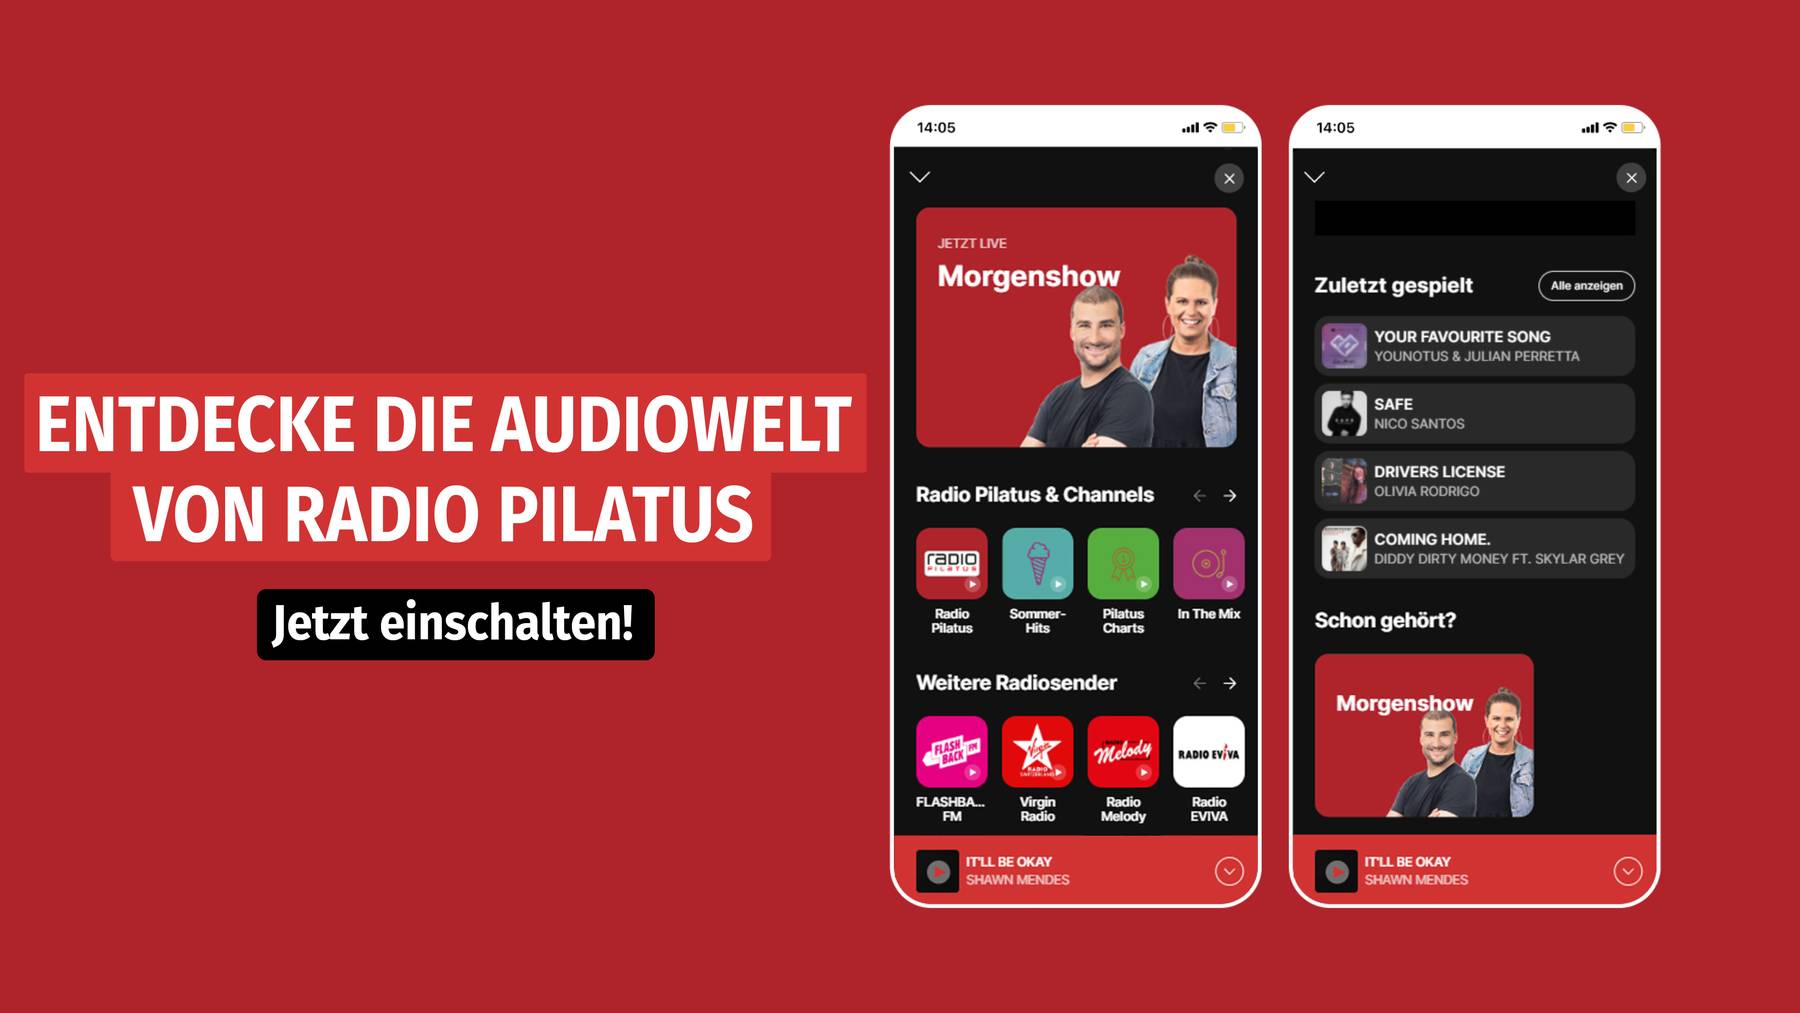 Die Audiowelt von Radio Pilatus